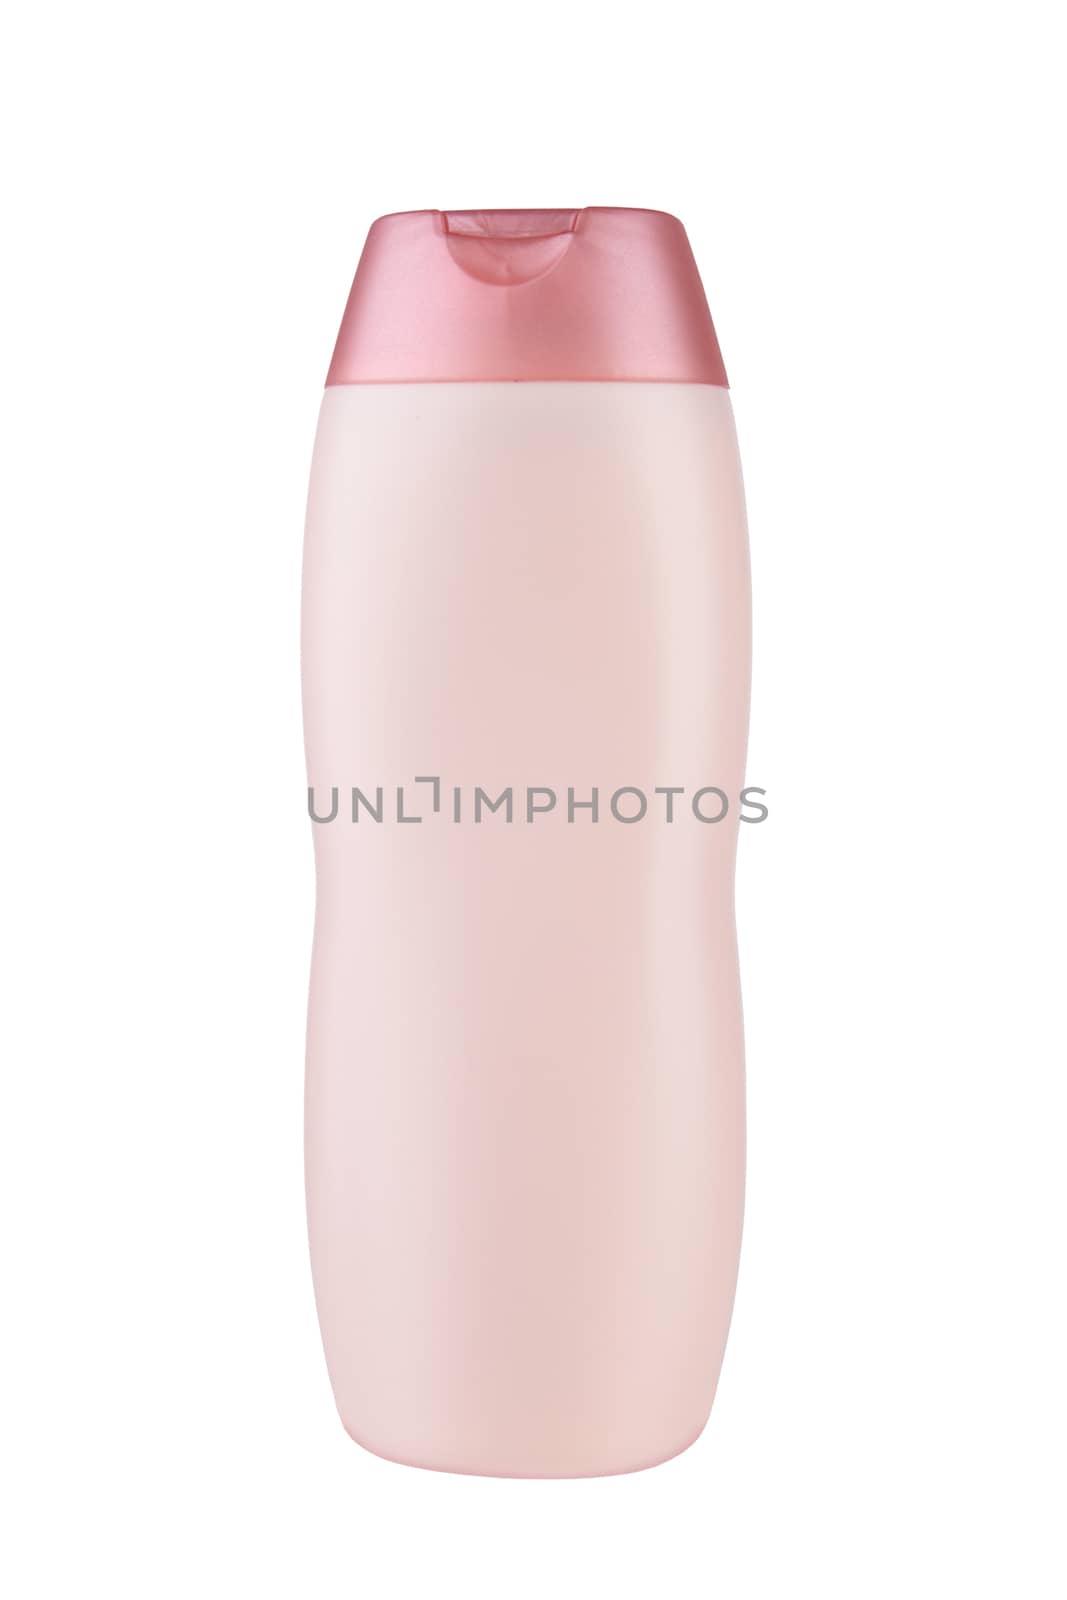 Plastic bottle shampoo isolated on a white background